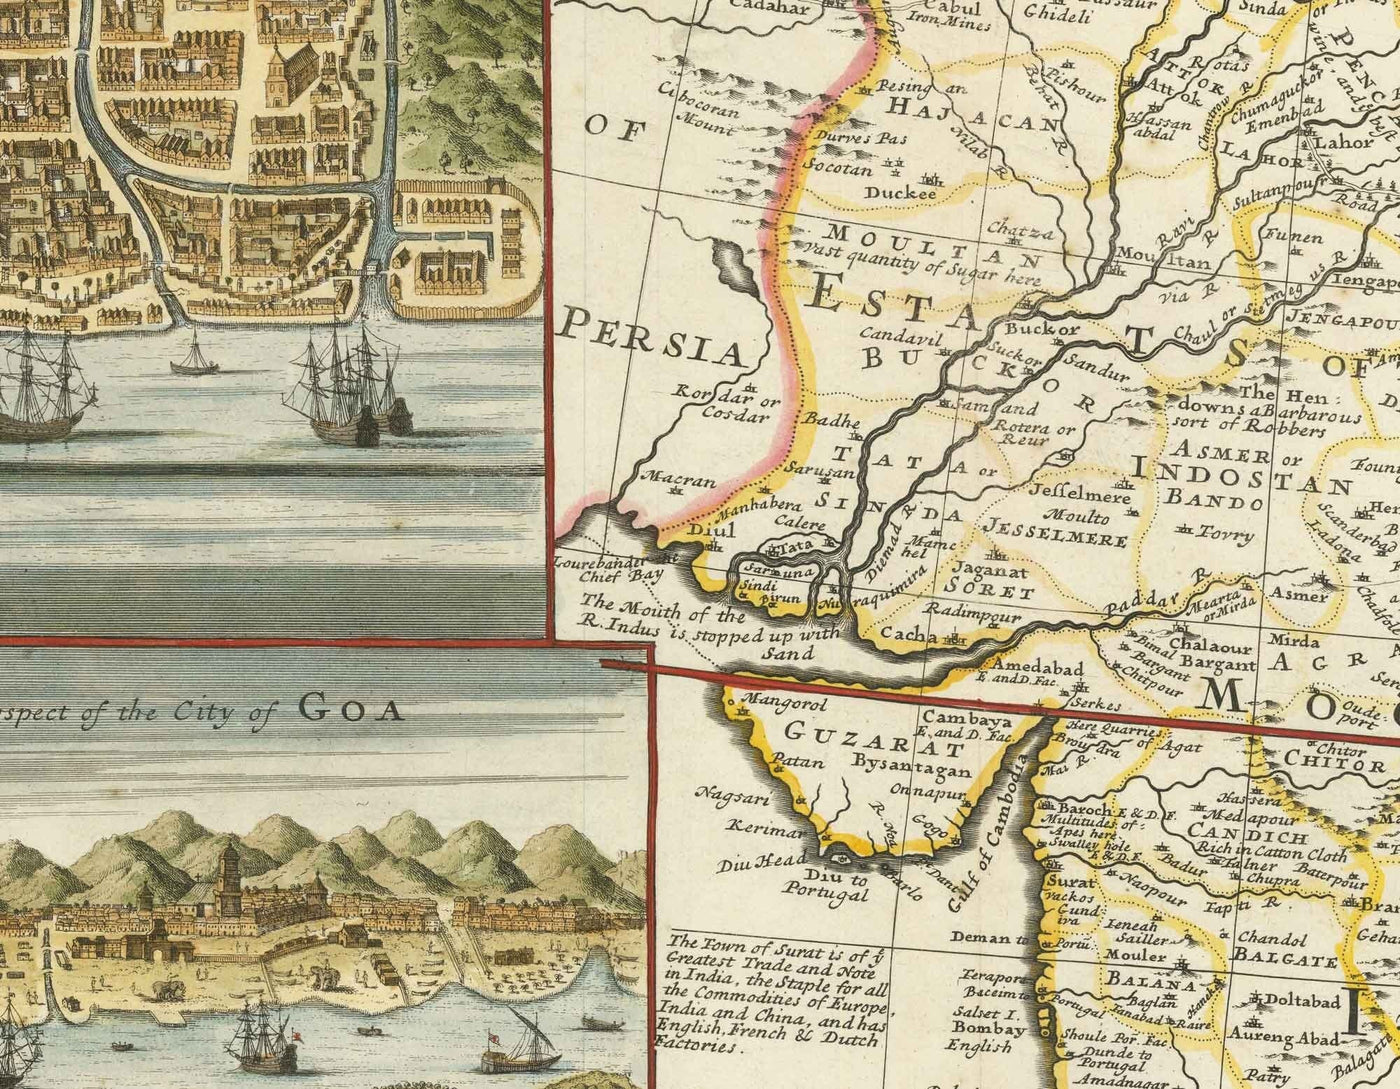 Alte Karte von Indien und Südostasien, 1717 von Herman Moll - Koloniale Ostindien, China, Malaysia, Thailand, Singapur, Indonesien